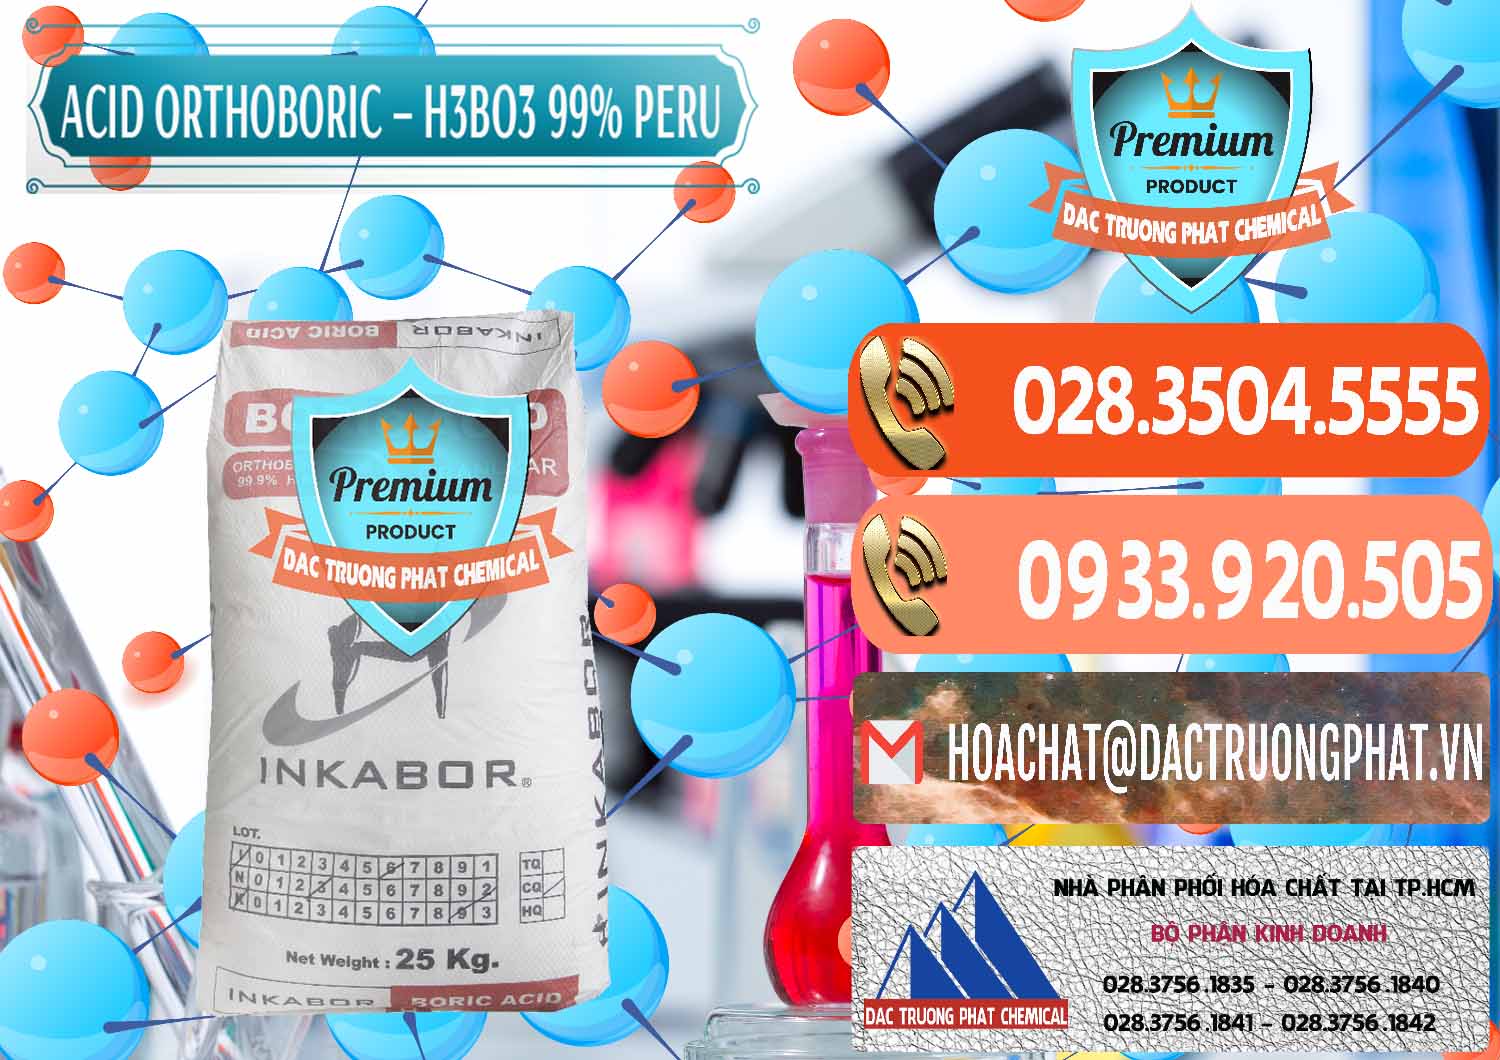 Nơi chuyên bán và phân phối Acid Boric – Axit Boric H3BO3 99% Inkabor Peru - 0280 - Chuyên kinh doanh _ phân phối hóa chất tại TP.HCM - hoachatmientay.com